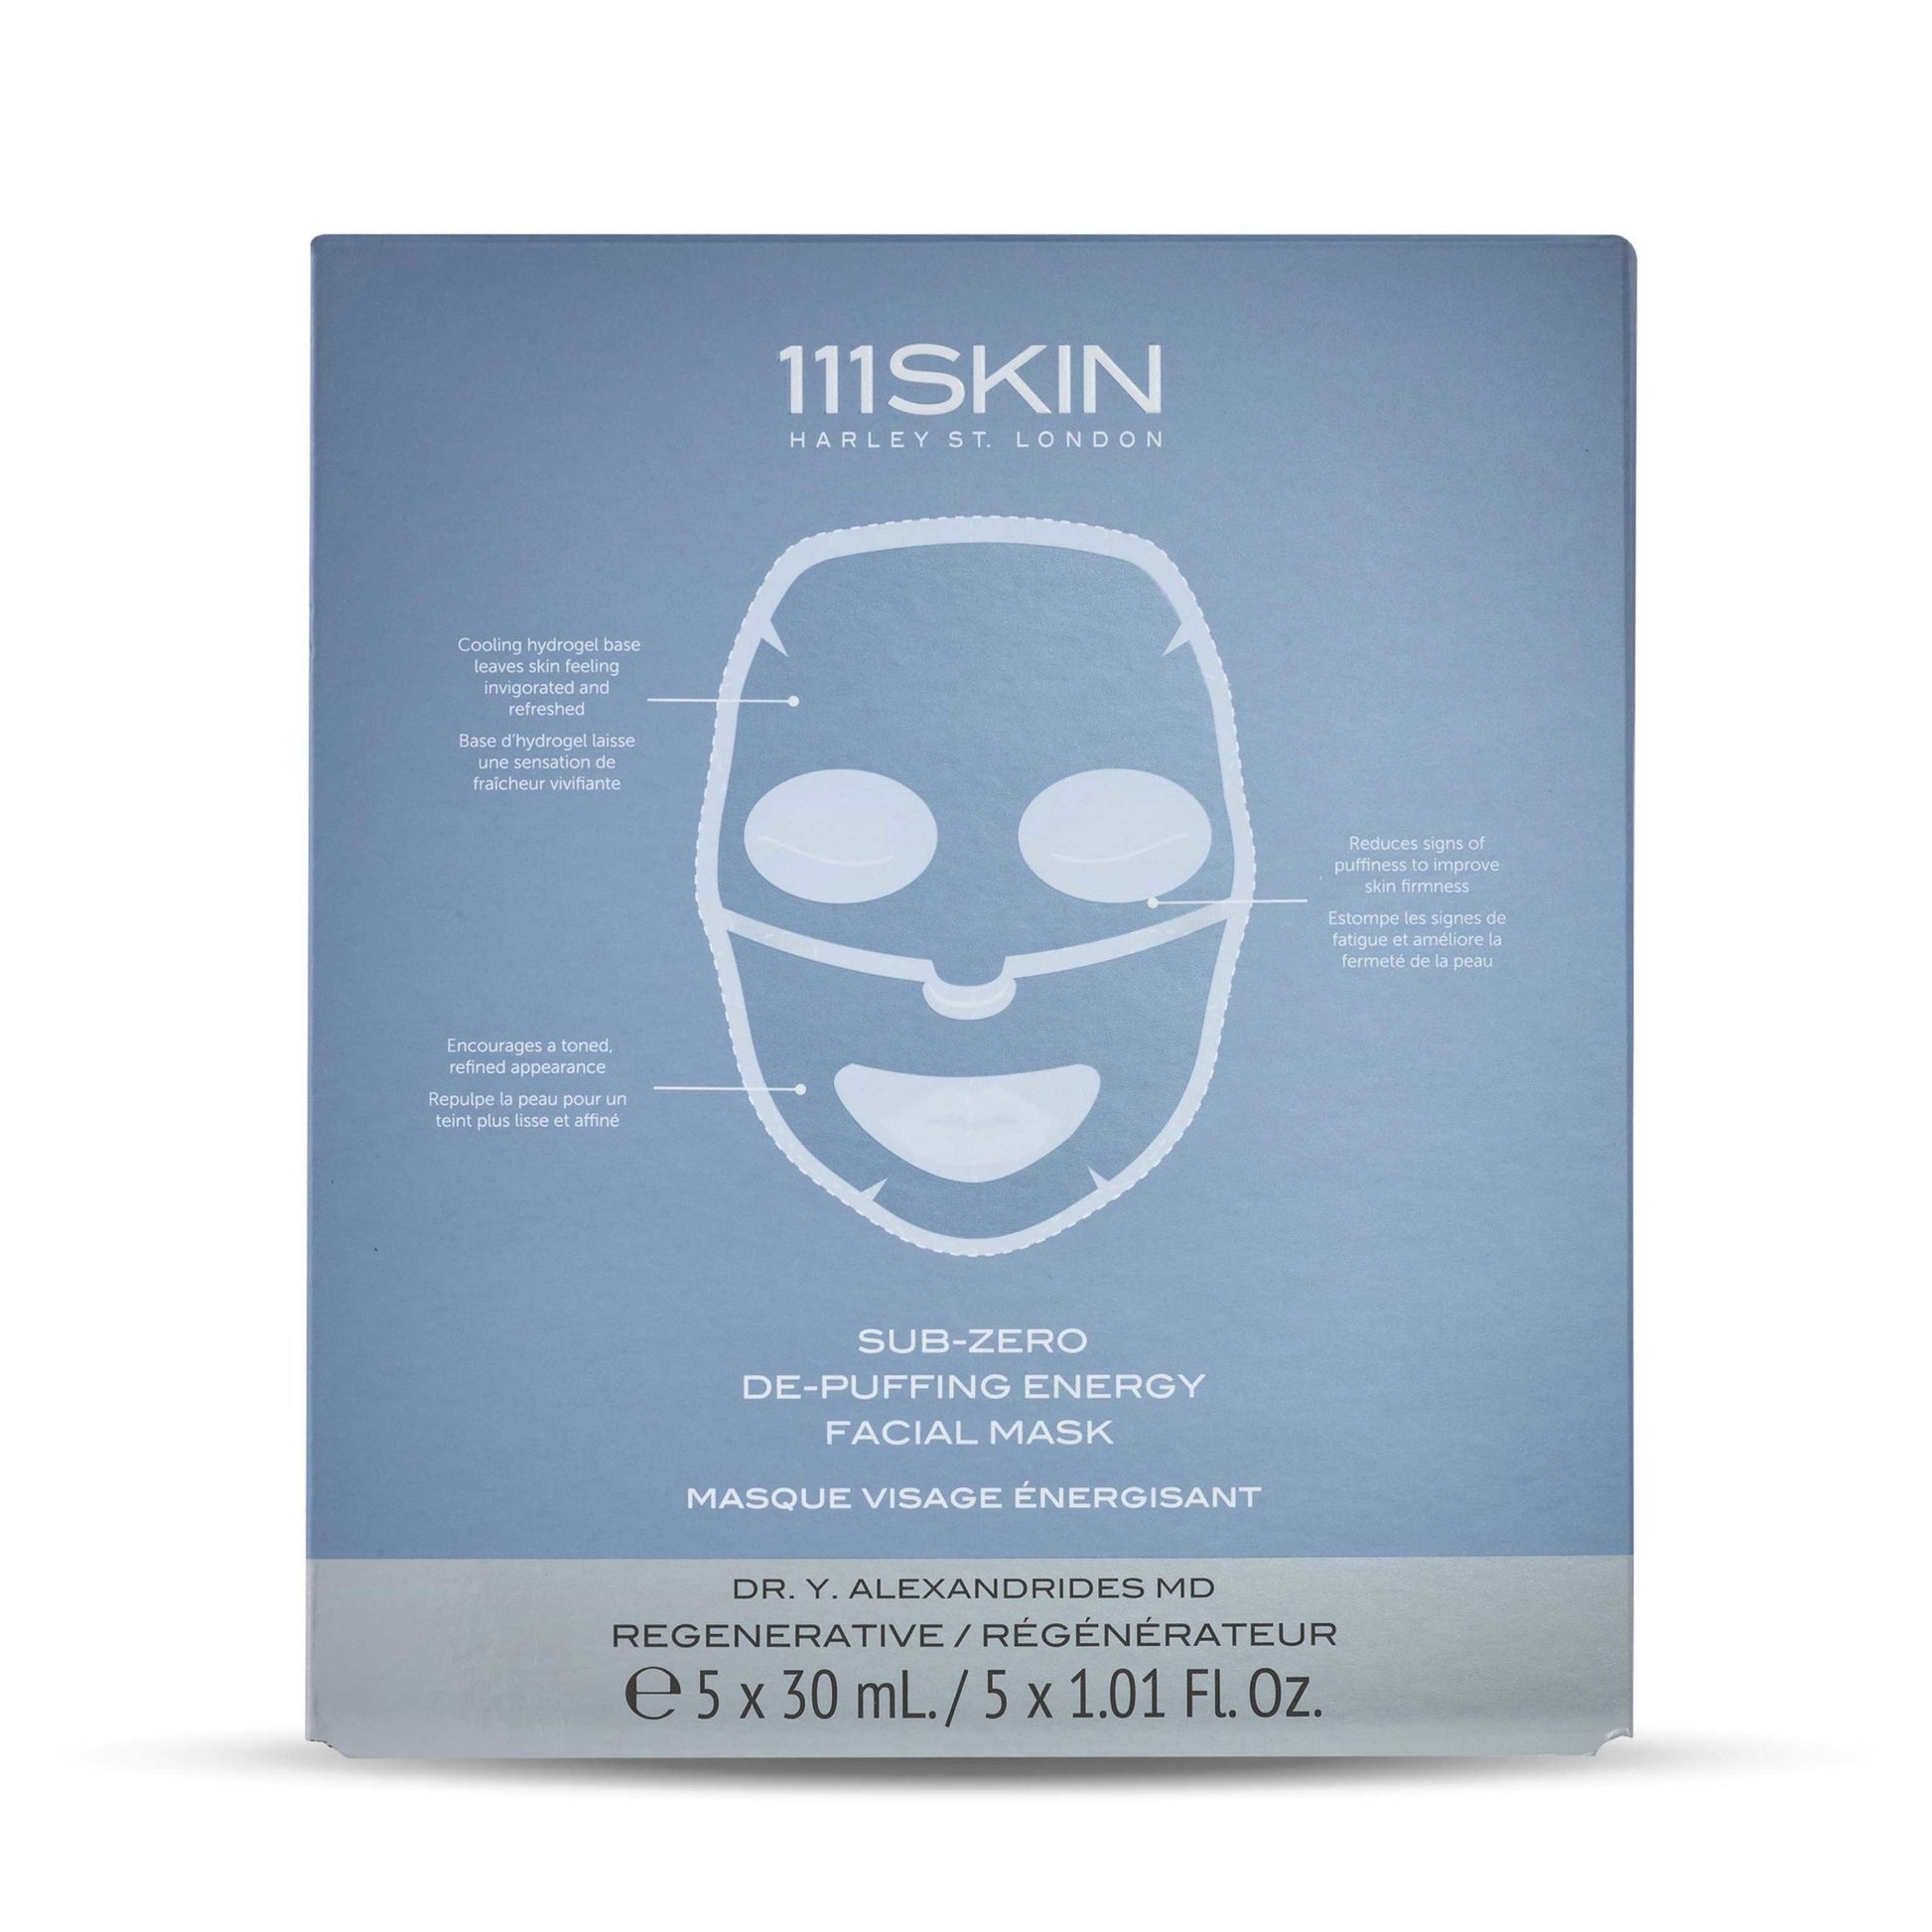 Sub-Zero De-Puffing Energy Facial Mask - 111SKIN EU